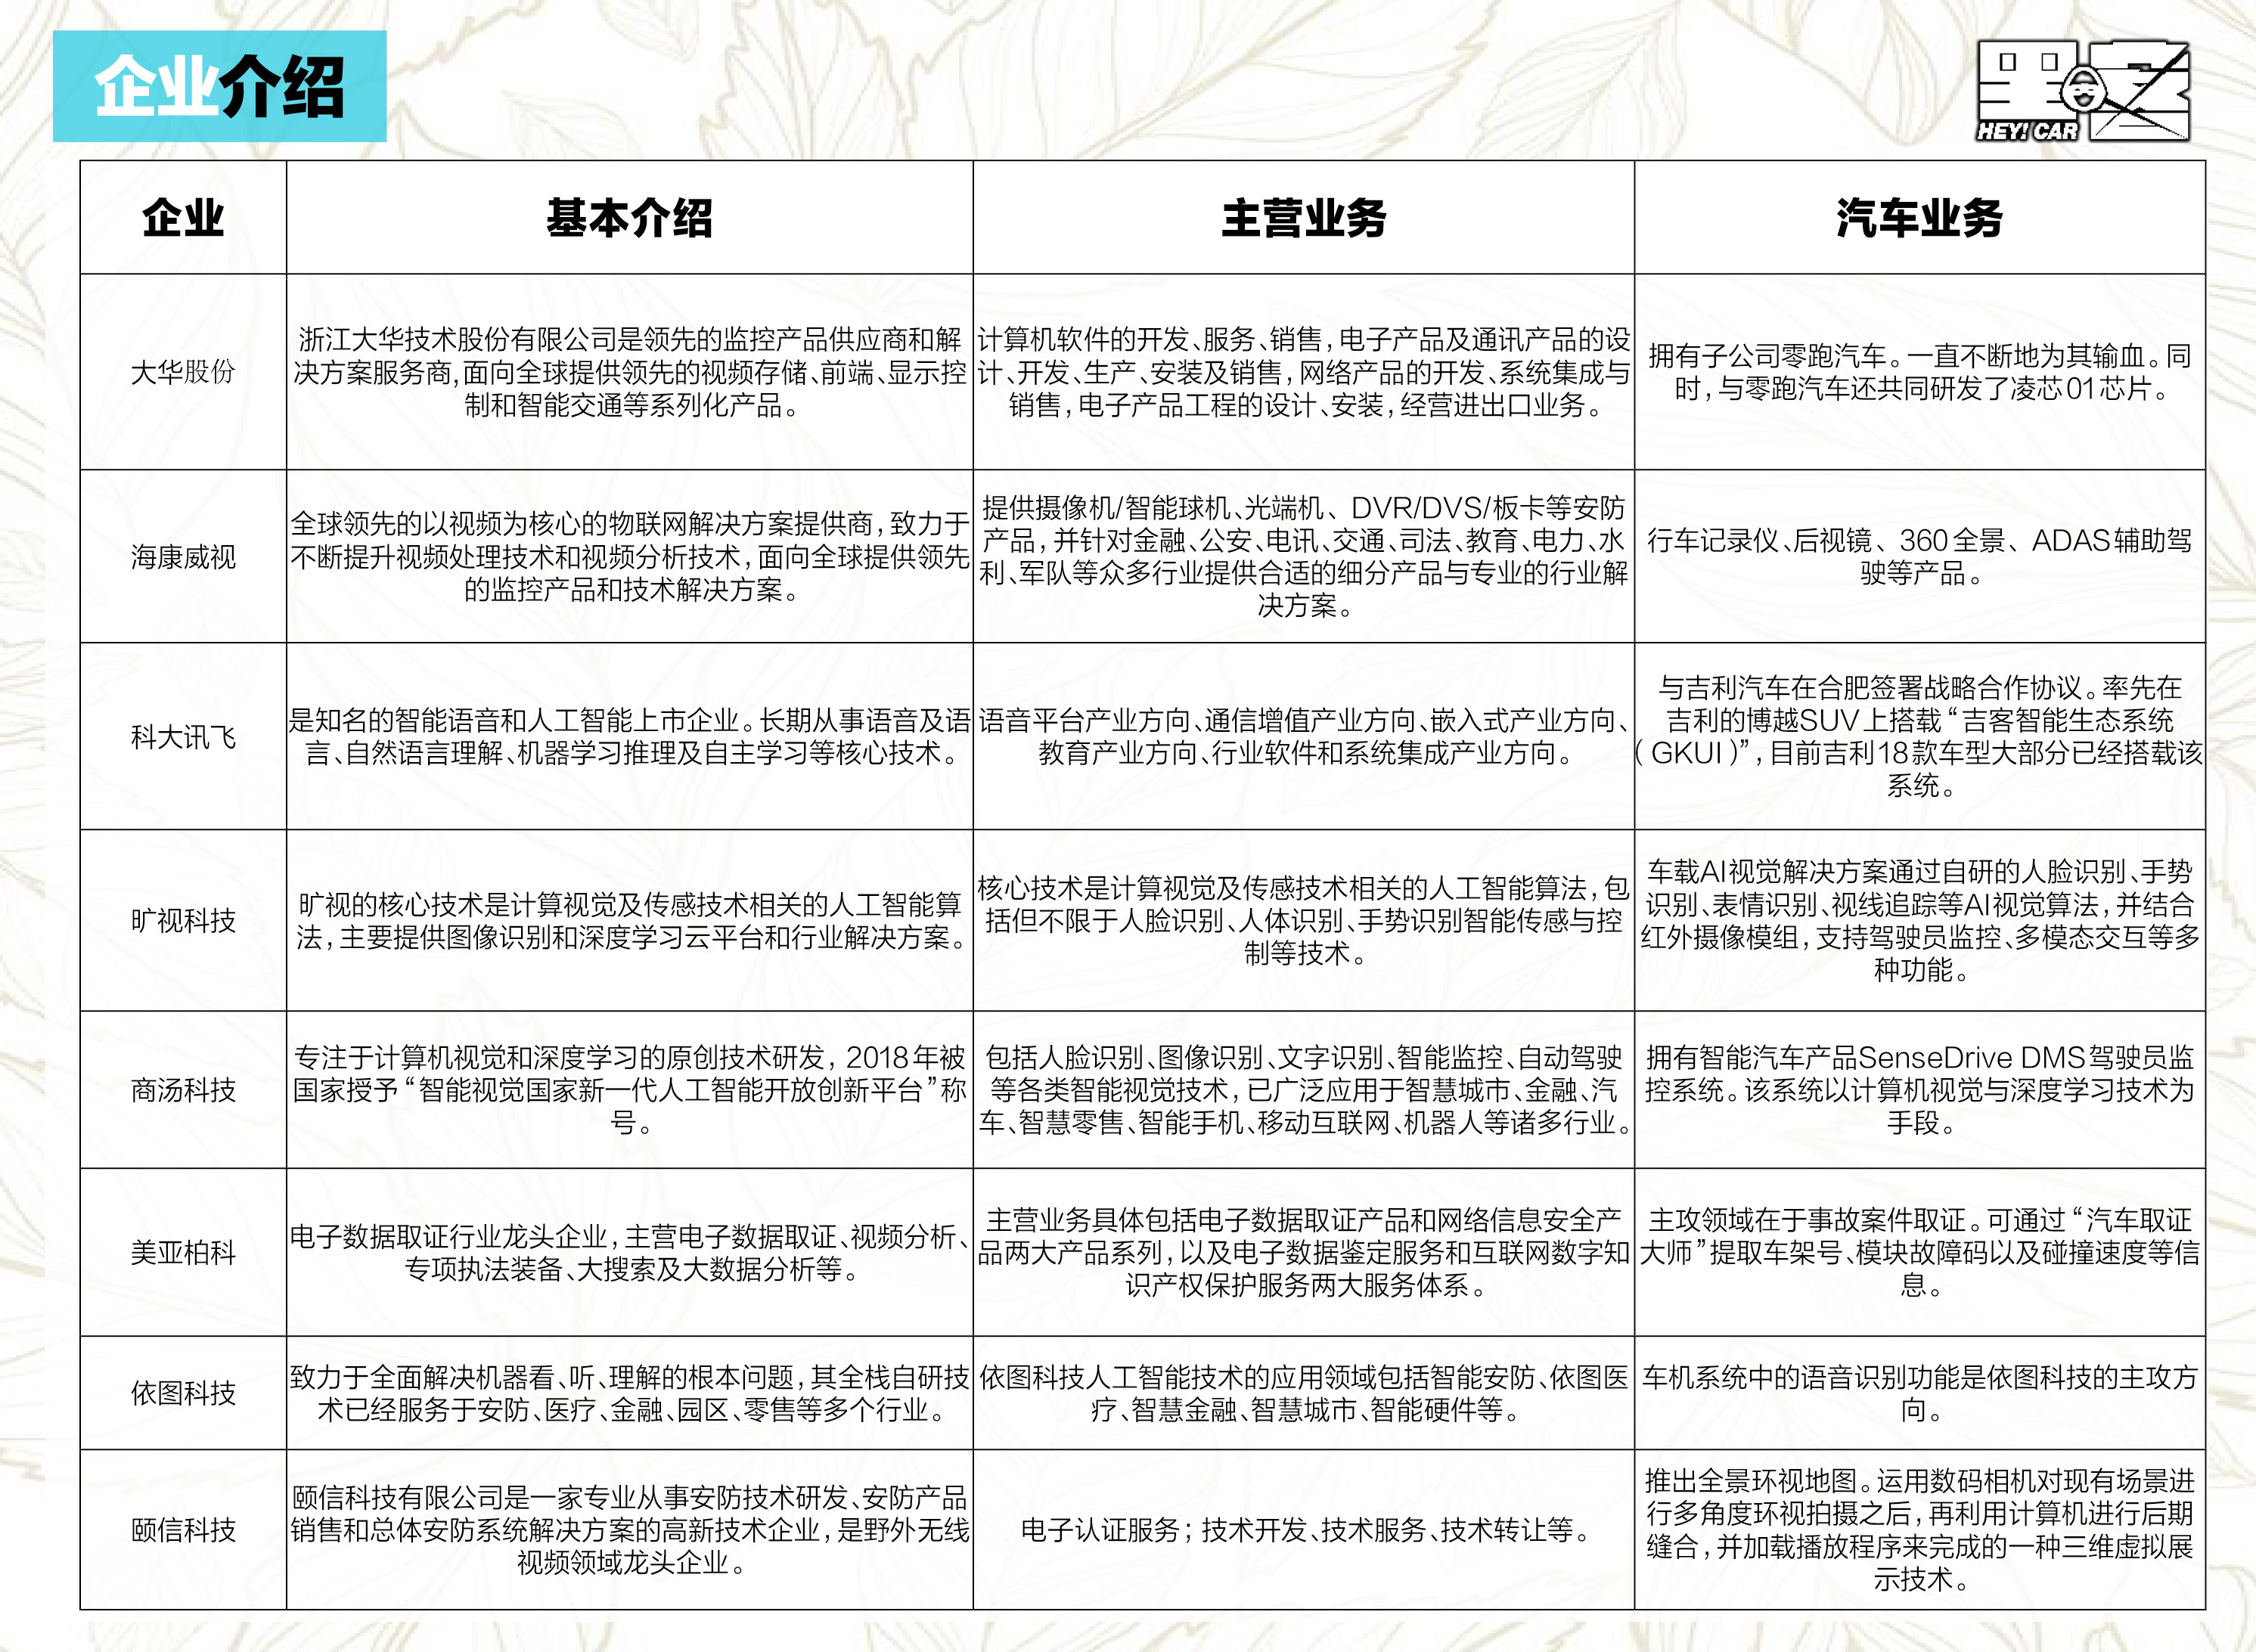 又有8家和汽车相关的中国科技企业被列入实体清单?没在怕的!